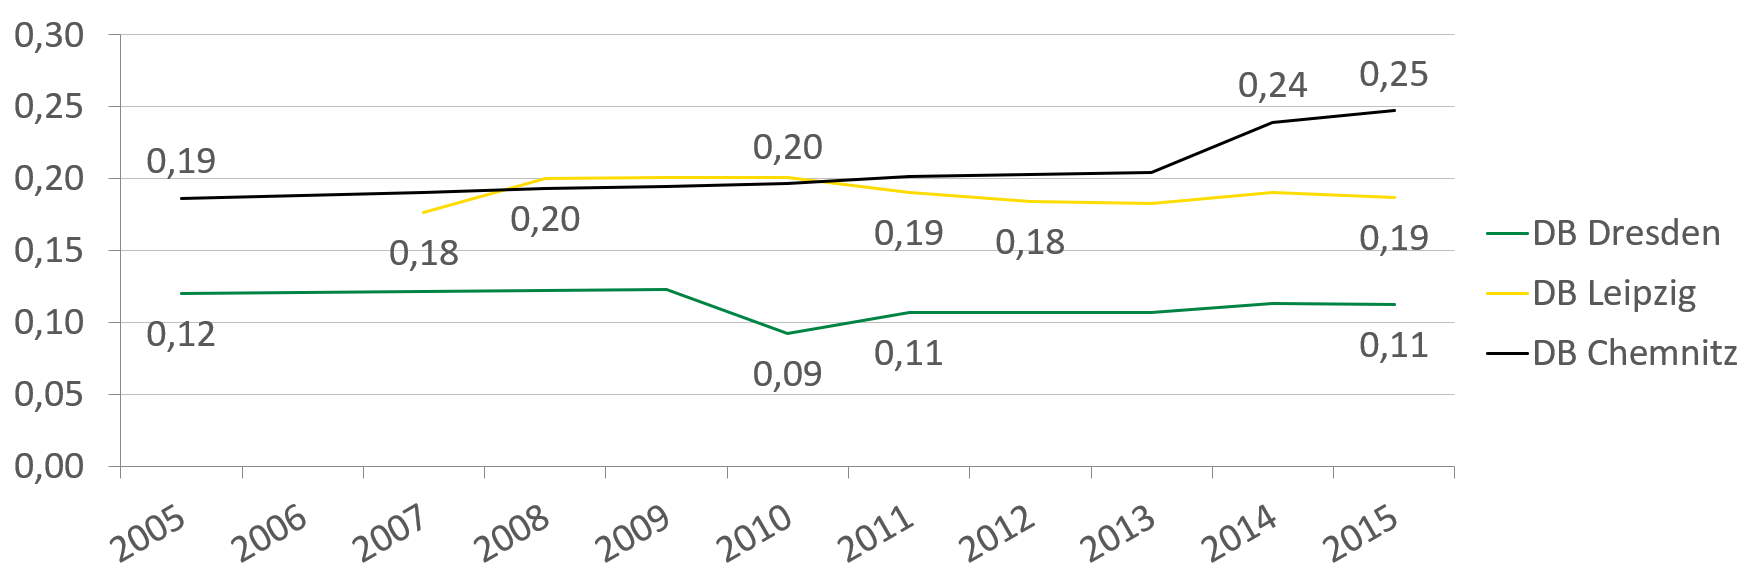 Die Anzahl der Fachstellen stieg in Chemnitz von 0,19 auf 0,25 pro 100.000 Einwohner. In Dresden ist die Zahl bis auf einen Einbruch von 0,03 Stellen im Jahr 2010, bei 0,11-0,12 Stellen geblieben.